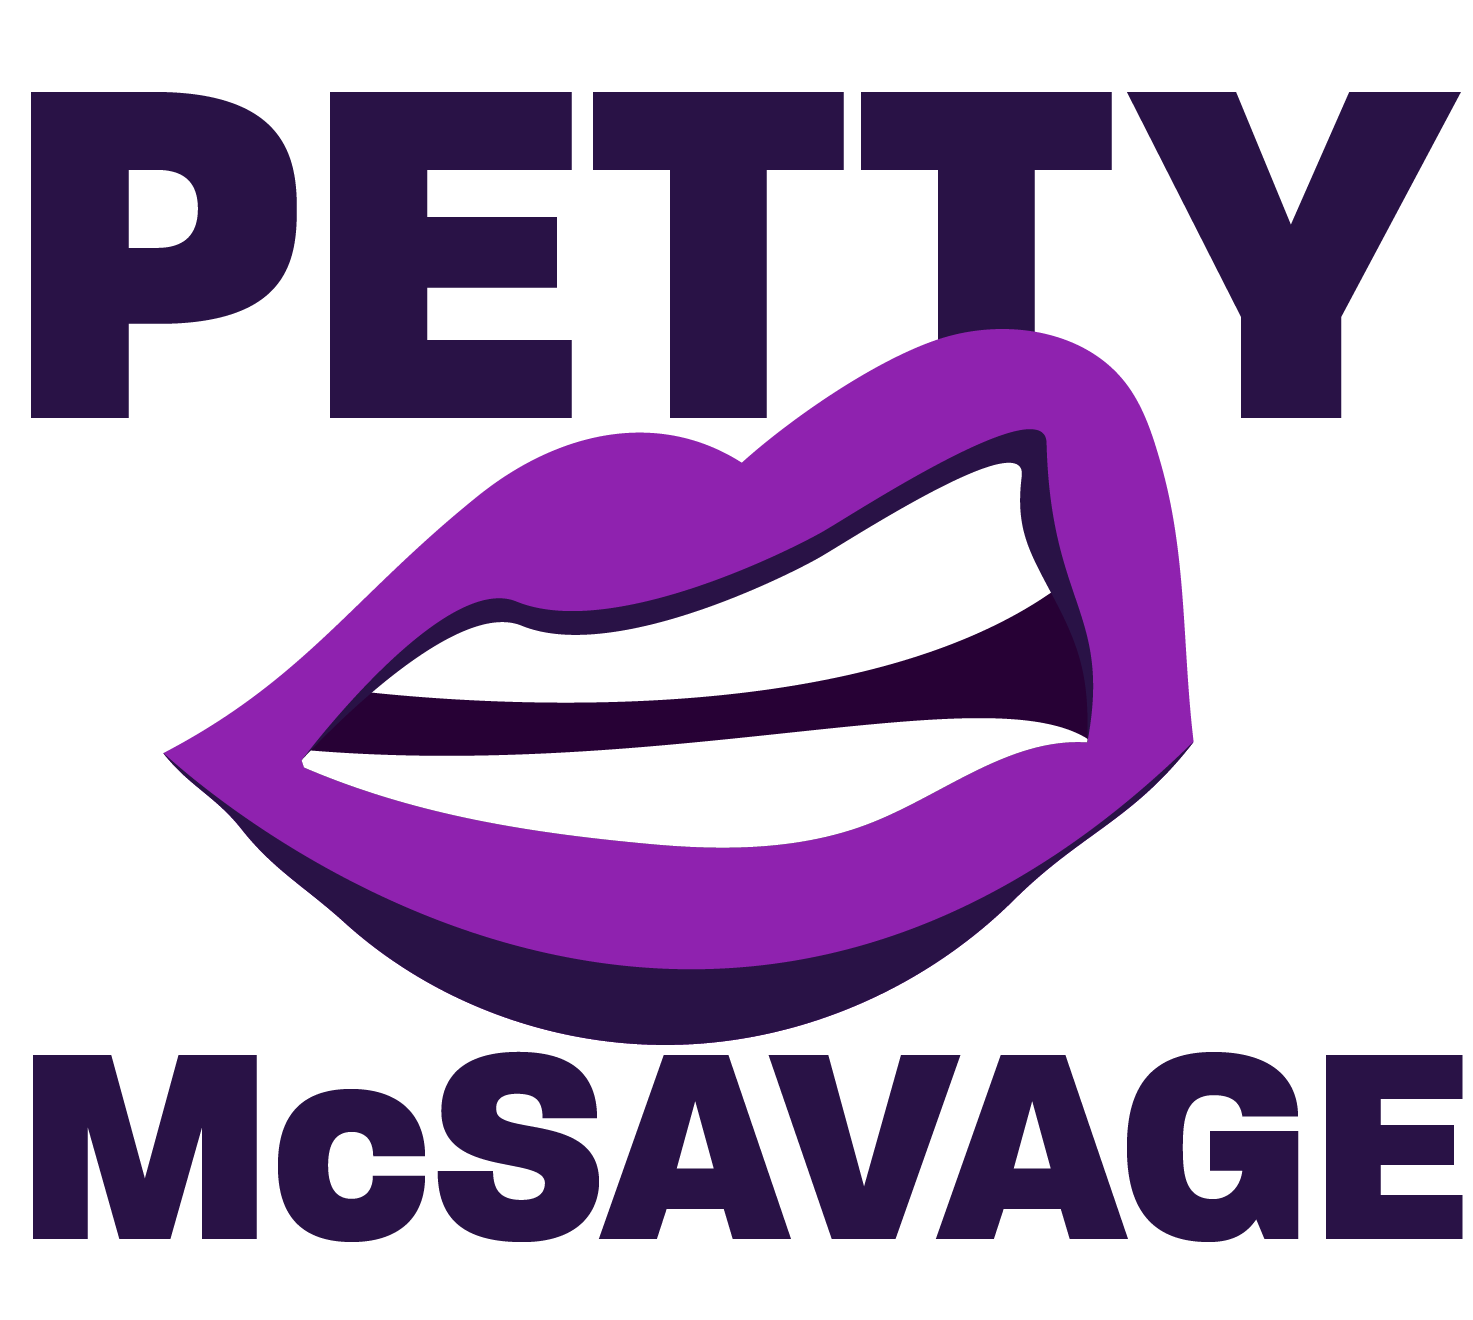 Pretty Fucking Petty Pen Pack – Petty McSavage